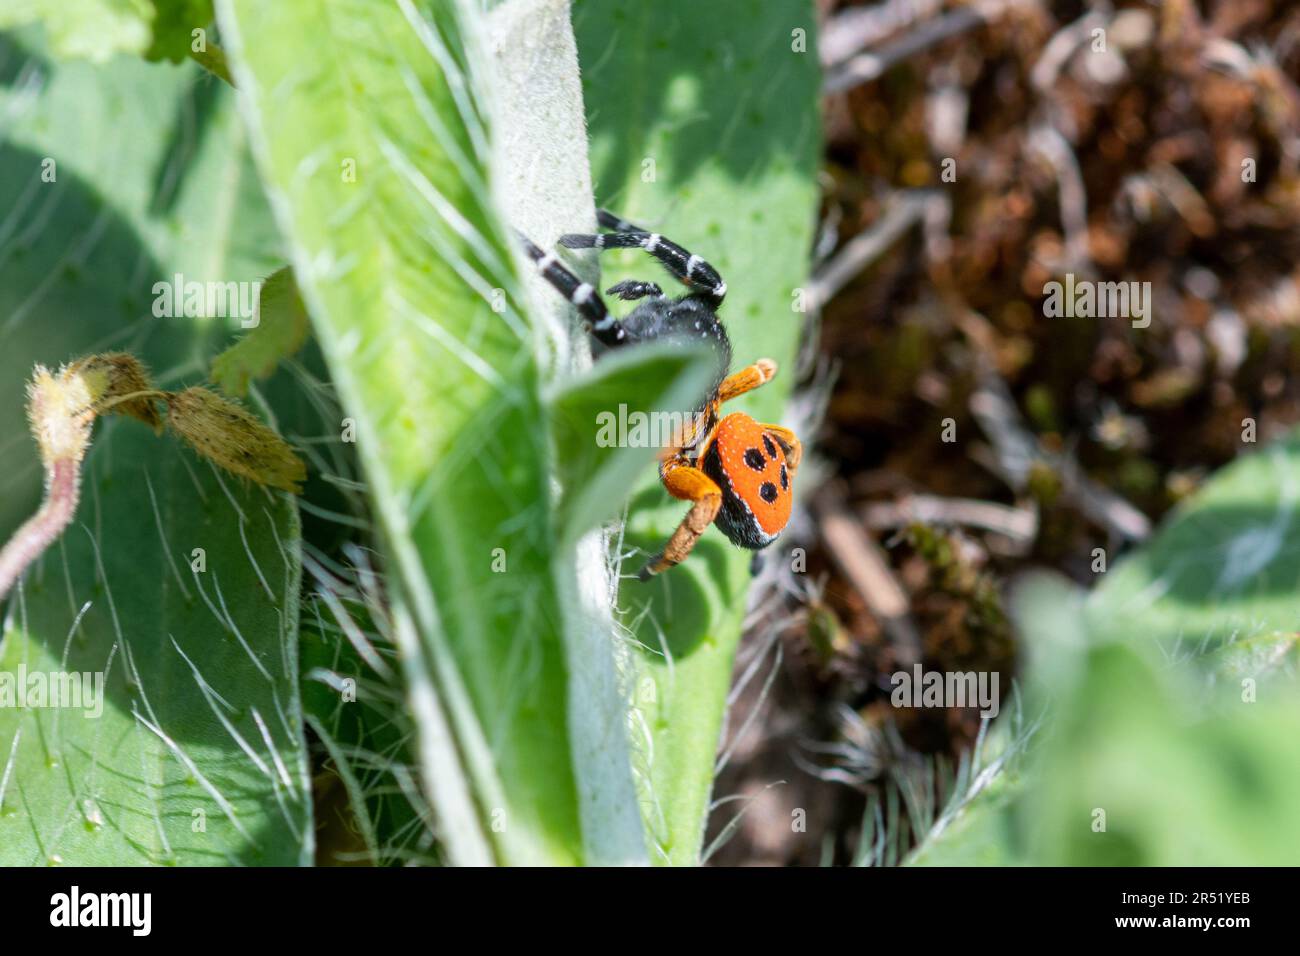 Marienkäfer (Eresus kollari), eine bunt gefärbte Spinne in der Familie Eresidae, unter der Vegetation im Grünlandlebensraum in Mittelitalien, Europa Stockfoto